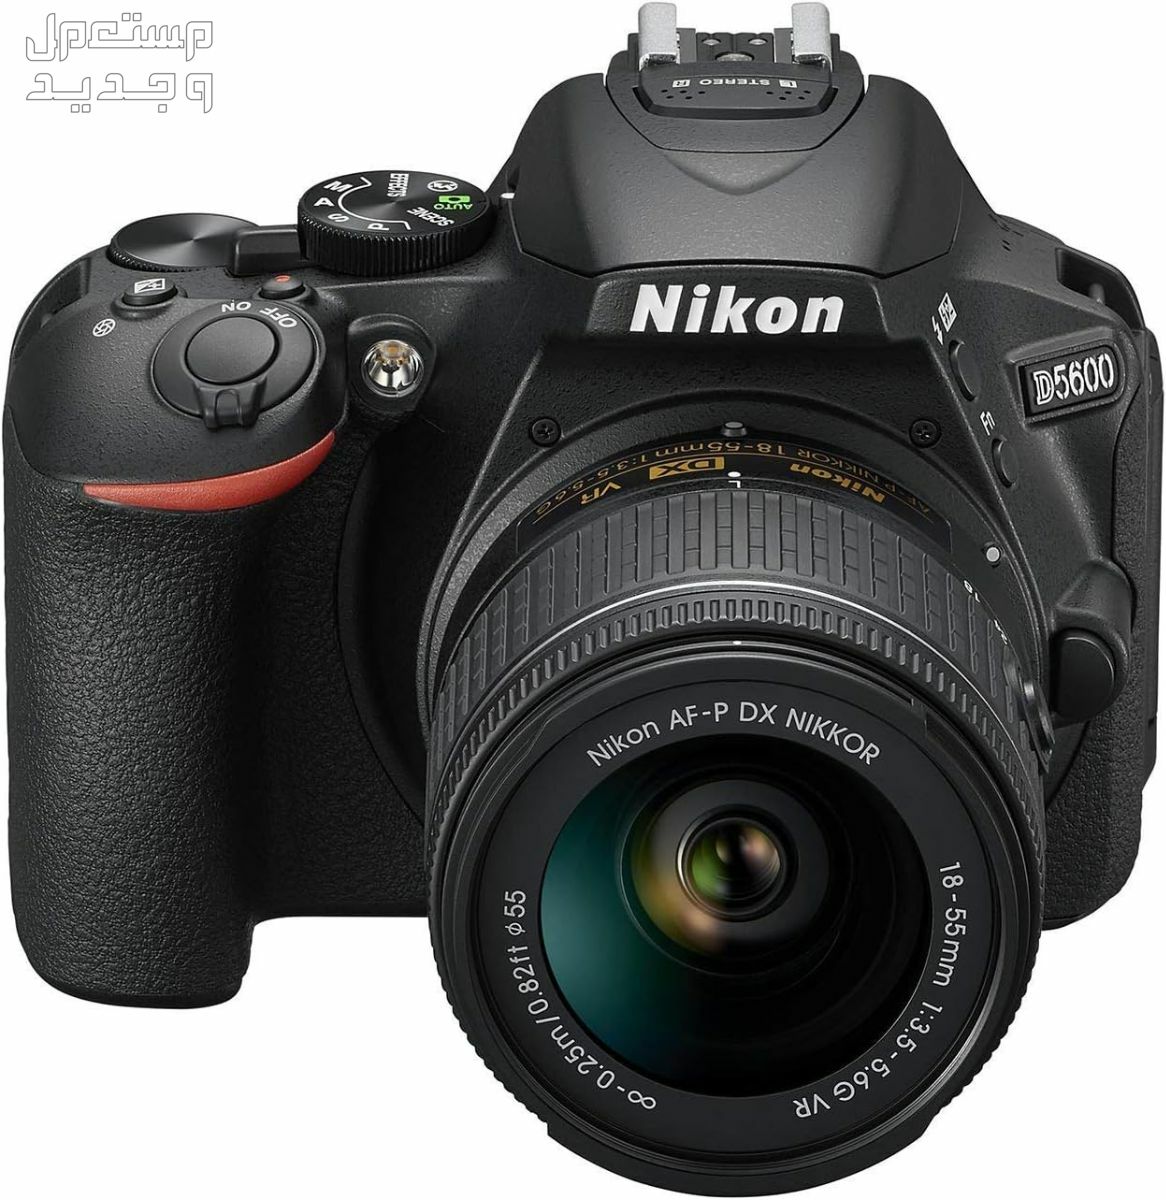 10 كاميرات تصوير ماركات عالمية بأسعار رخيصة في جيبوتي سعر كاميرا Nikon D5600